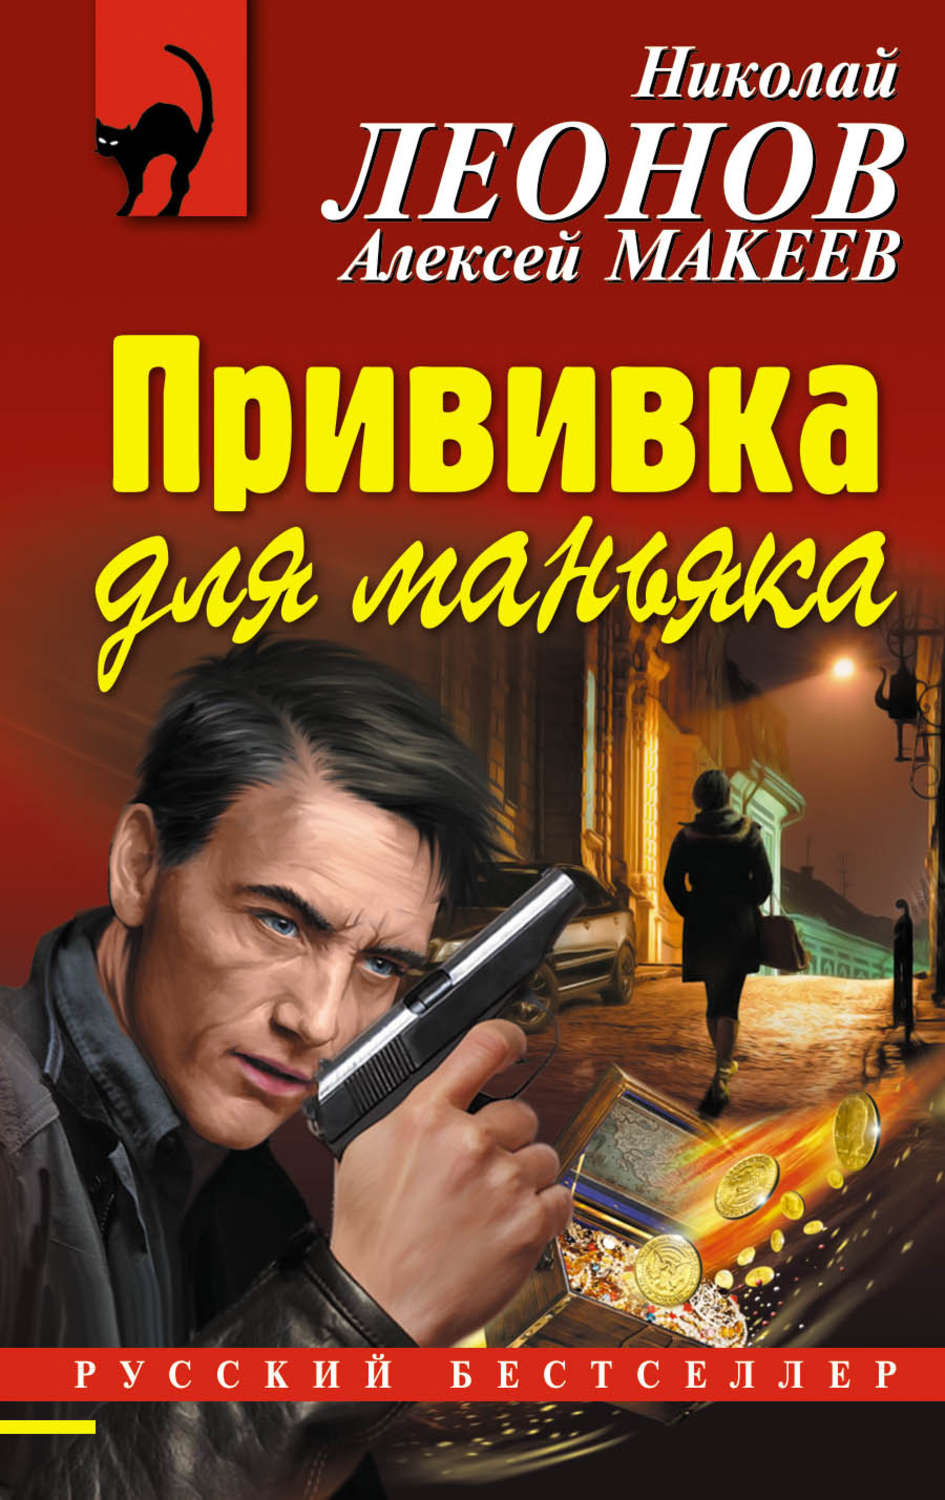 Последний детектив книга. Детективы книги. Российские детективы книги. Русские детективы книги авторы. Интересные книги детективы.